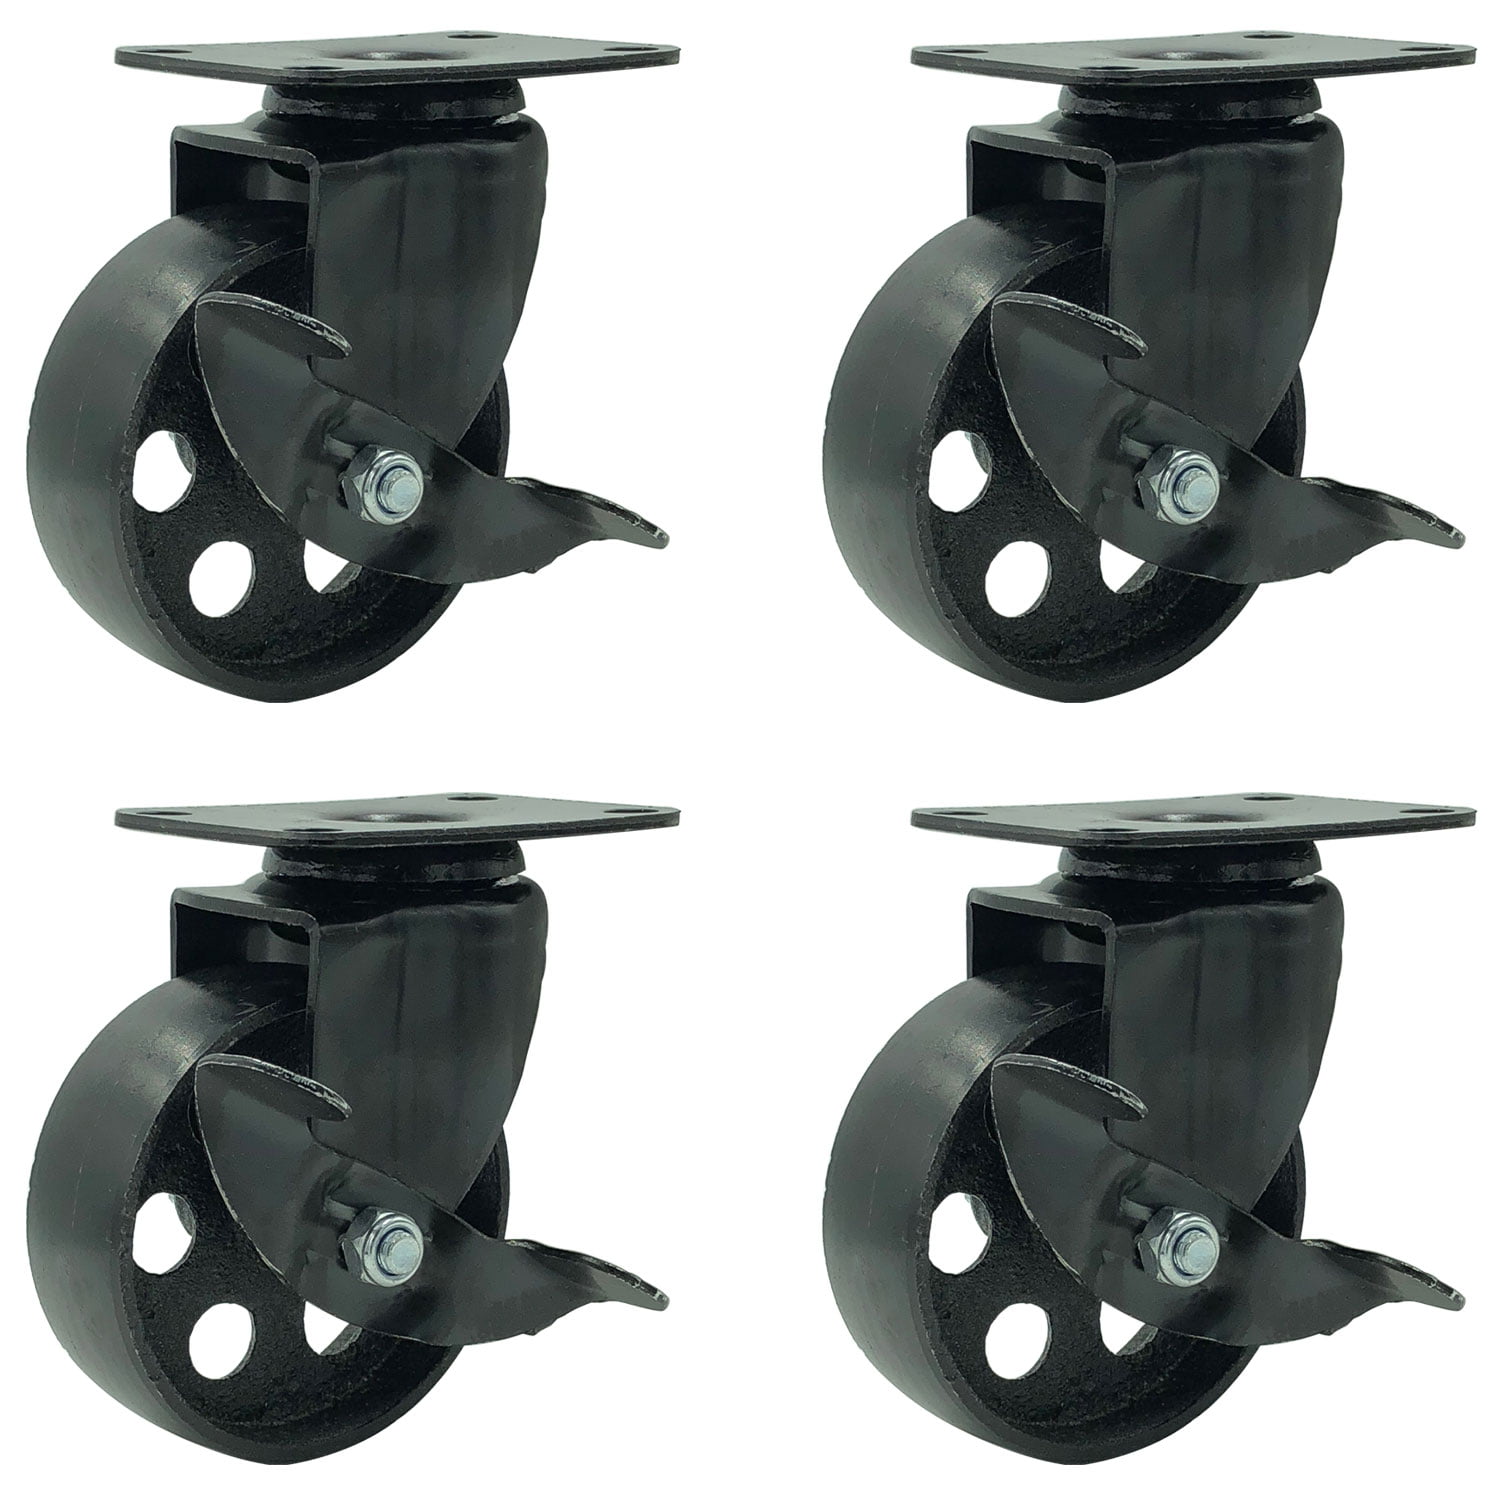 4 All Black Metal Swivel Plate Caster Wheels w/ Brake Heavy Duty 3.5" W/ brake 